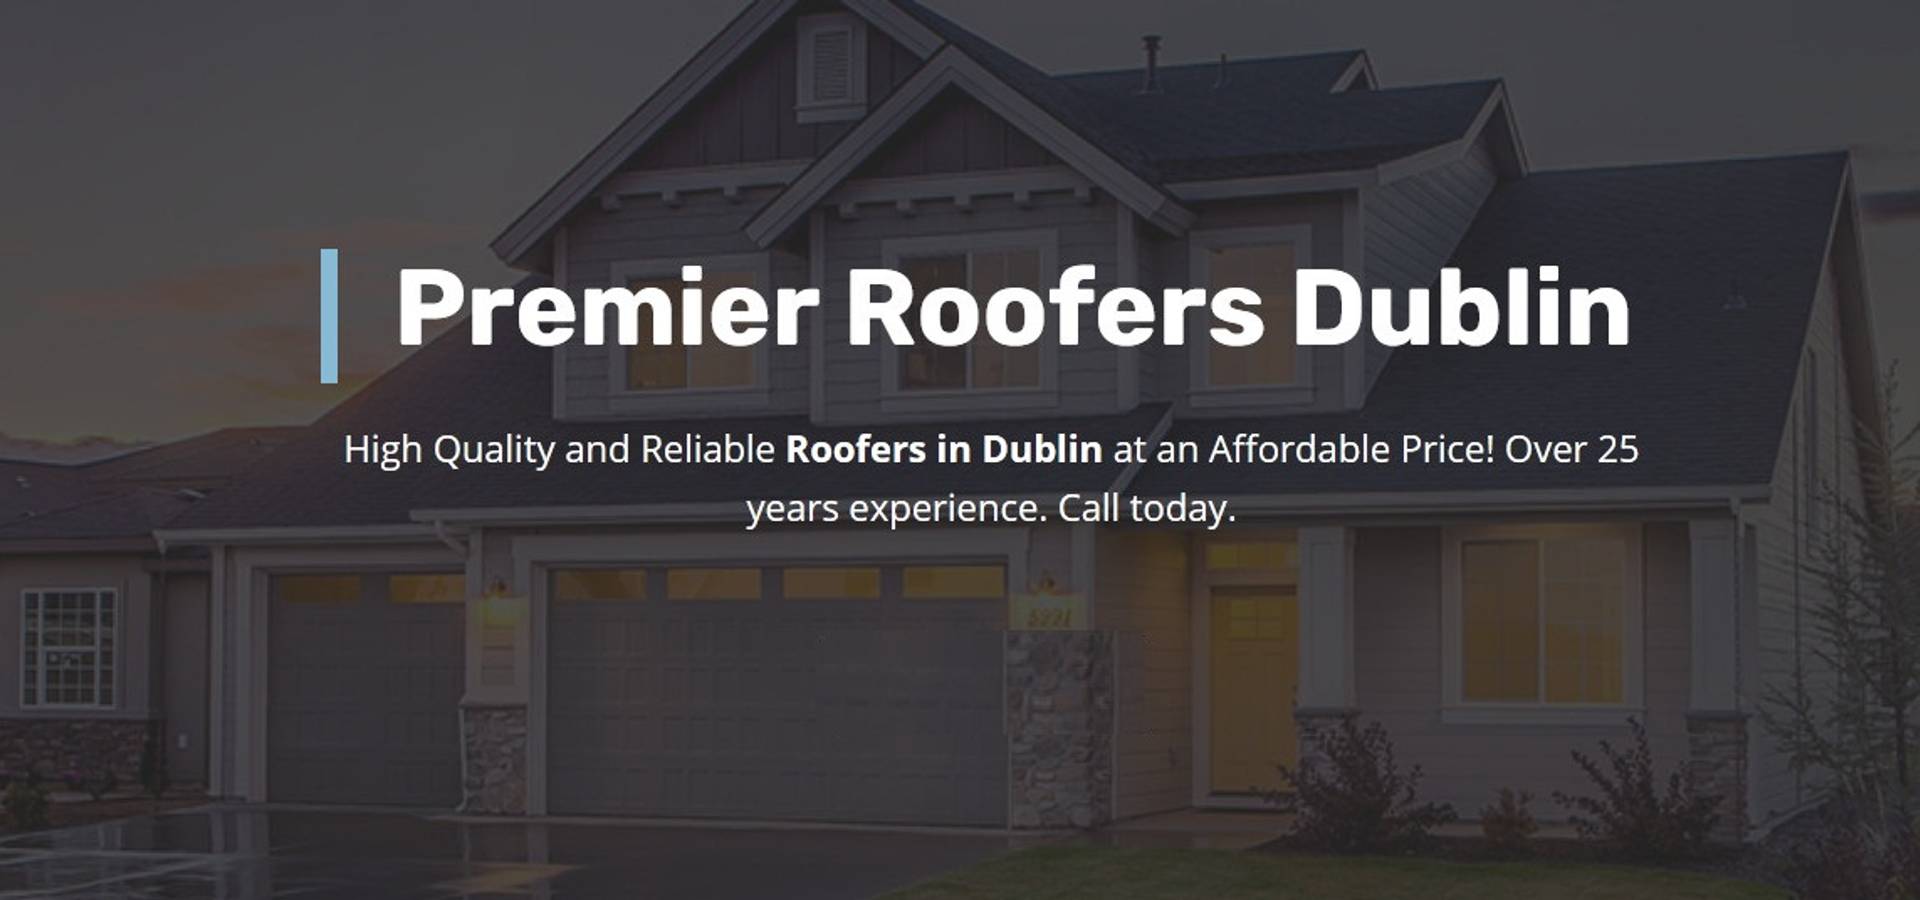 Premier Roofers Dublin